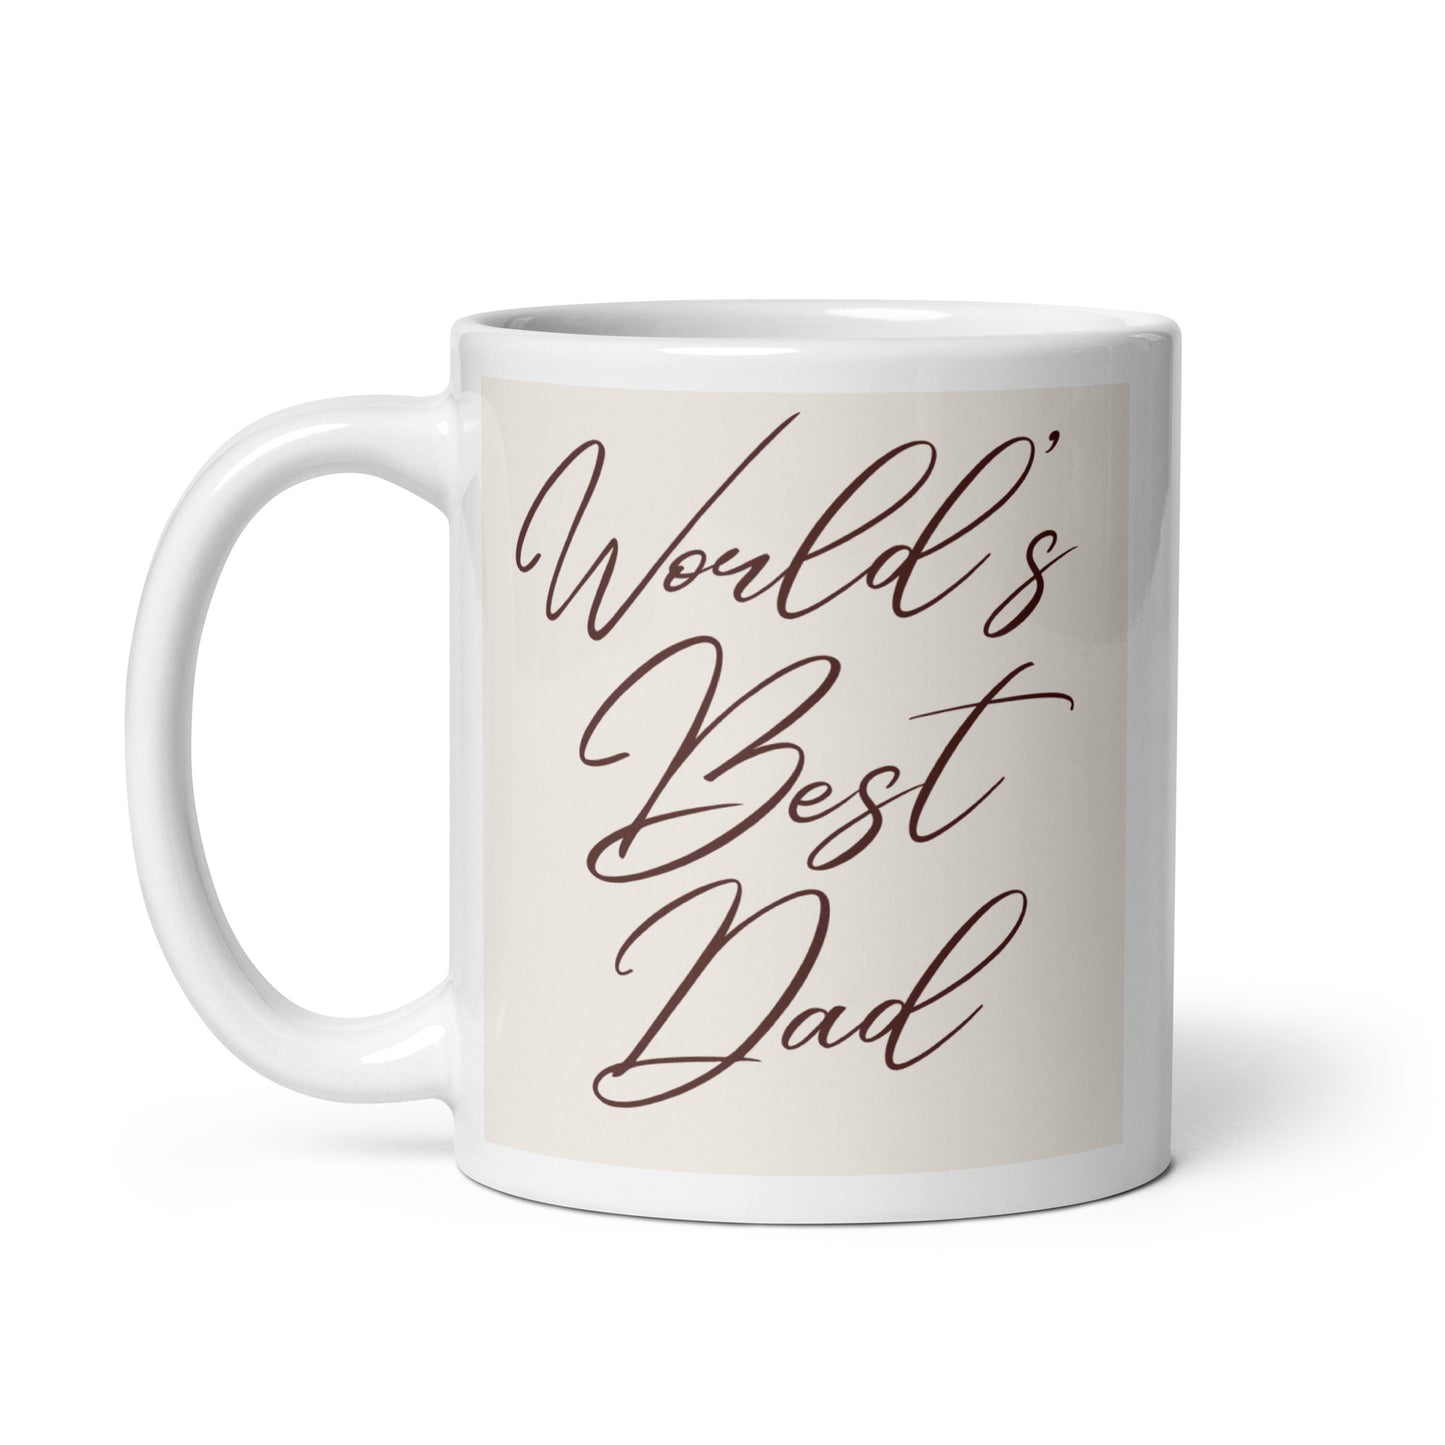 World's Best Dad White glossy mug